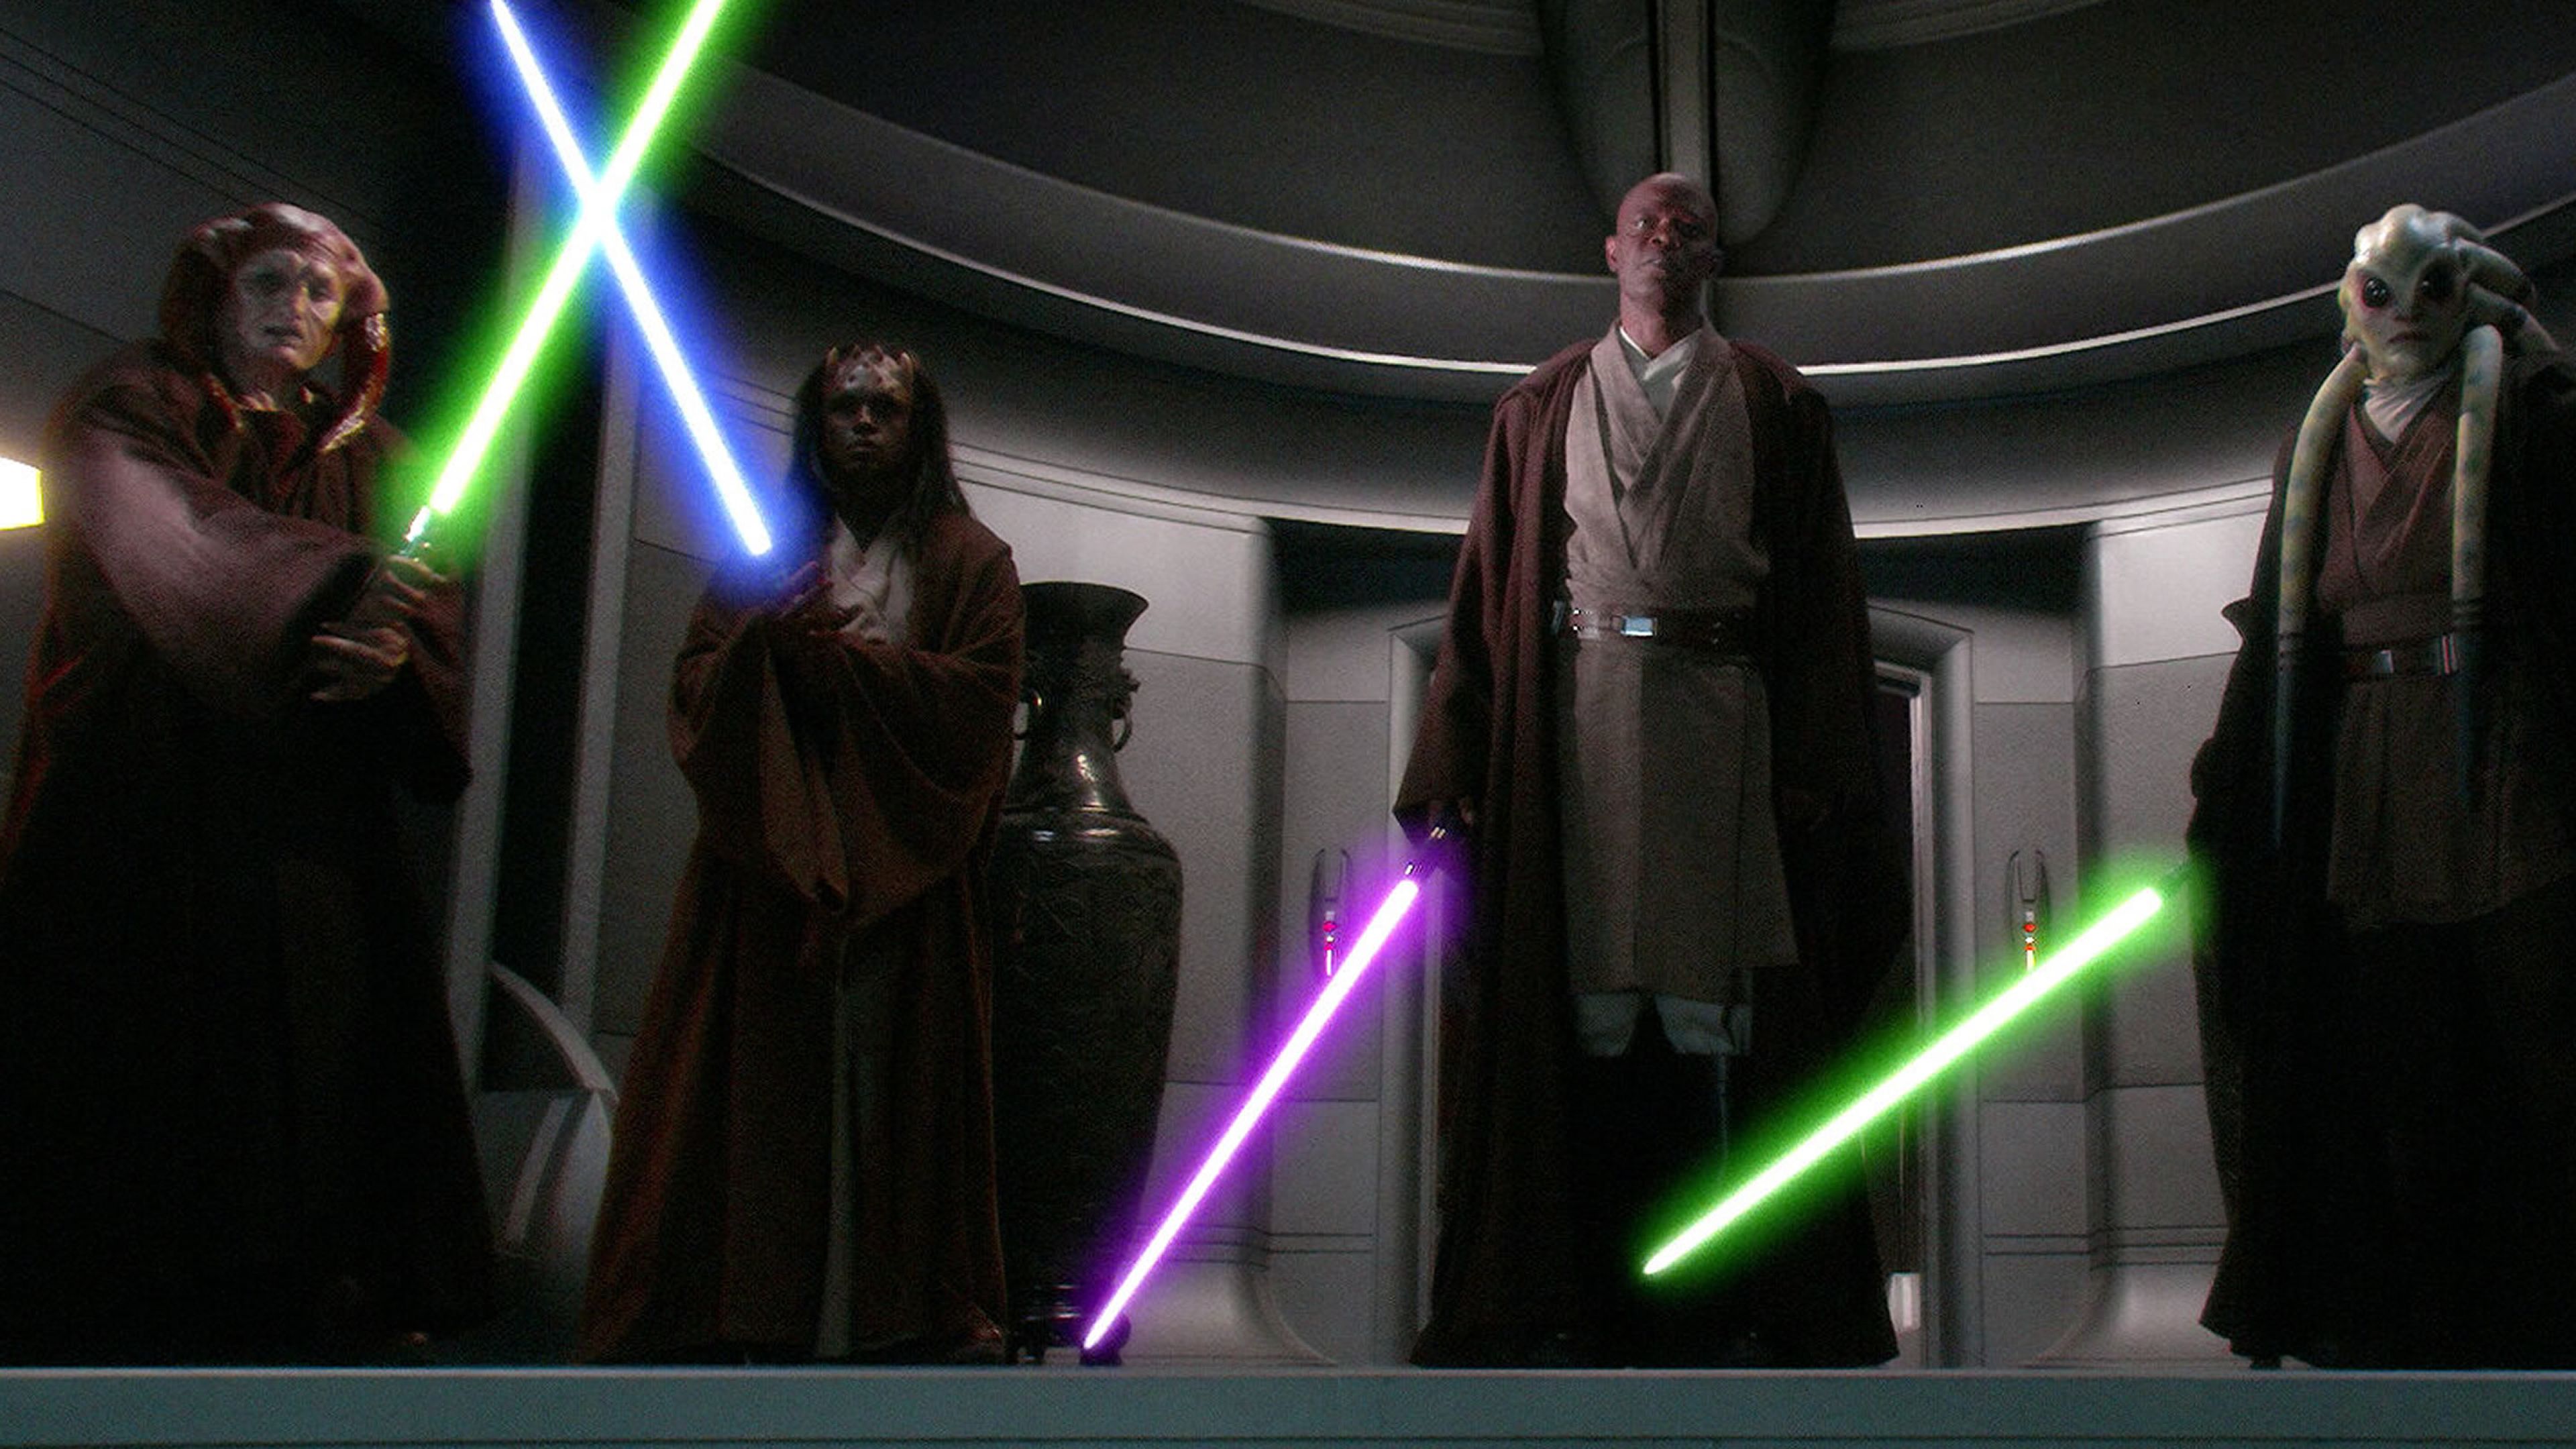 Star Wars episodio III: La venganza de los Sith